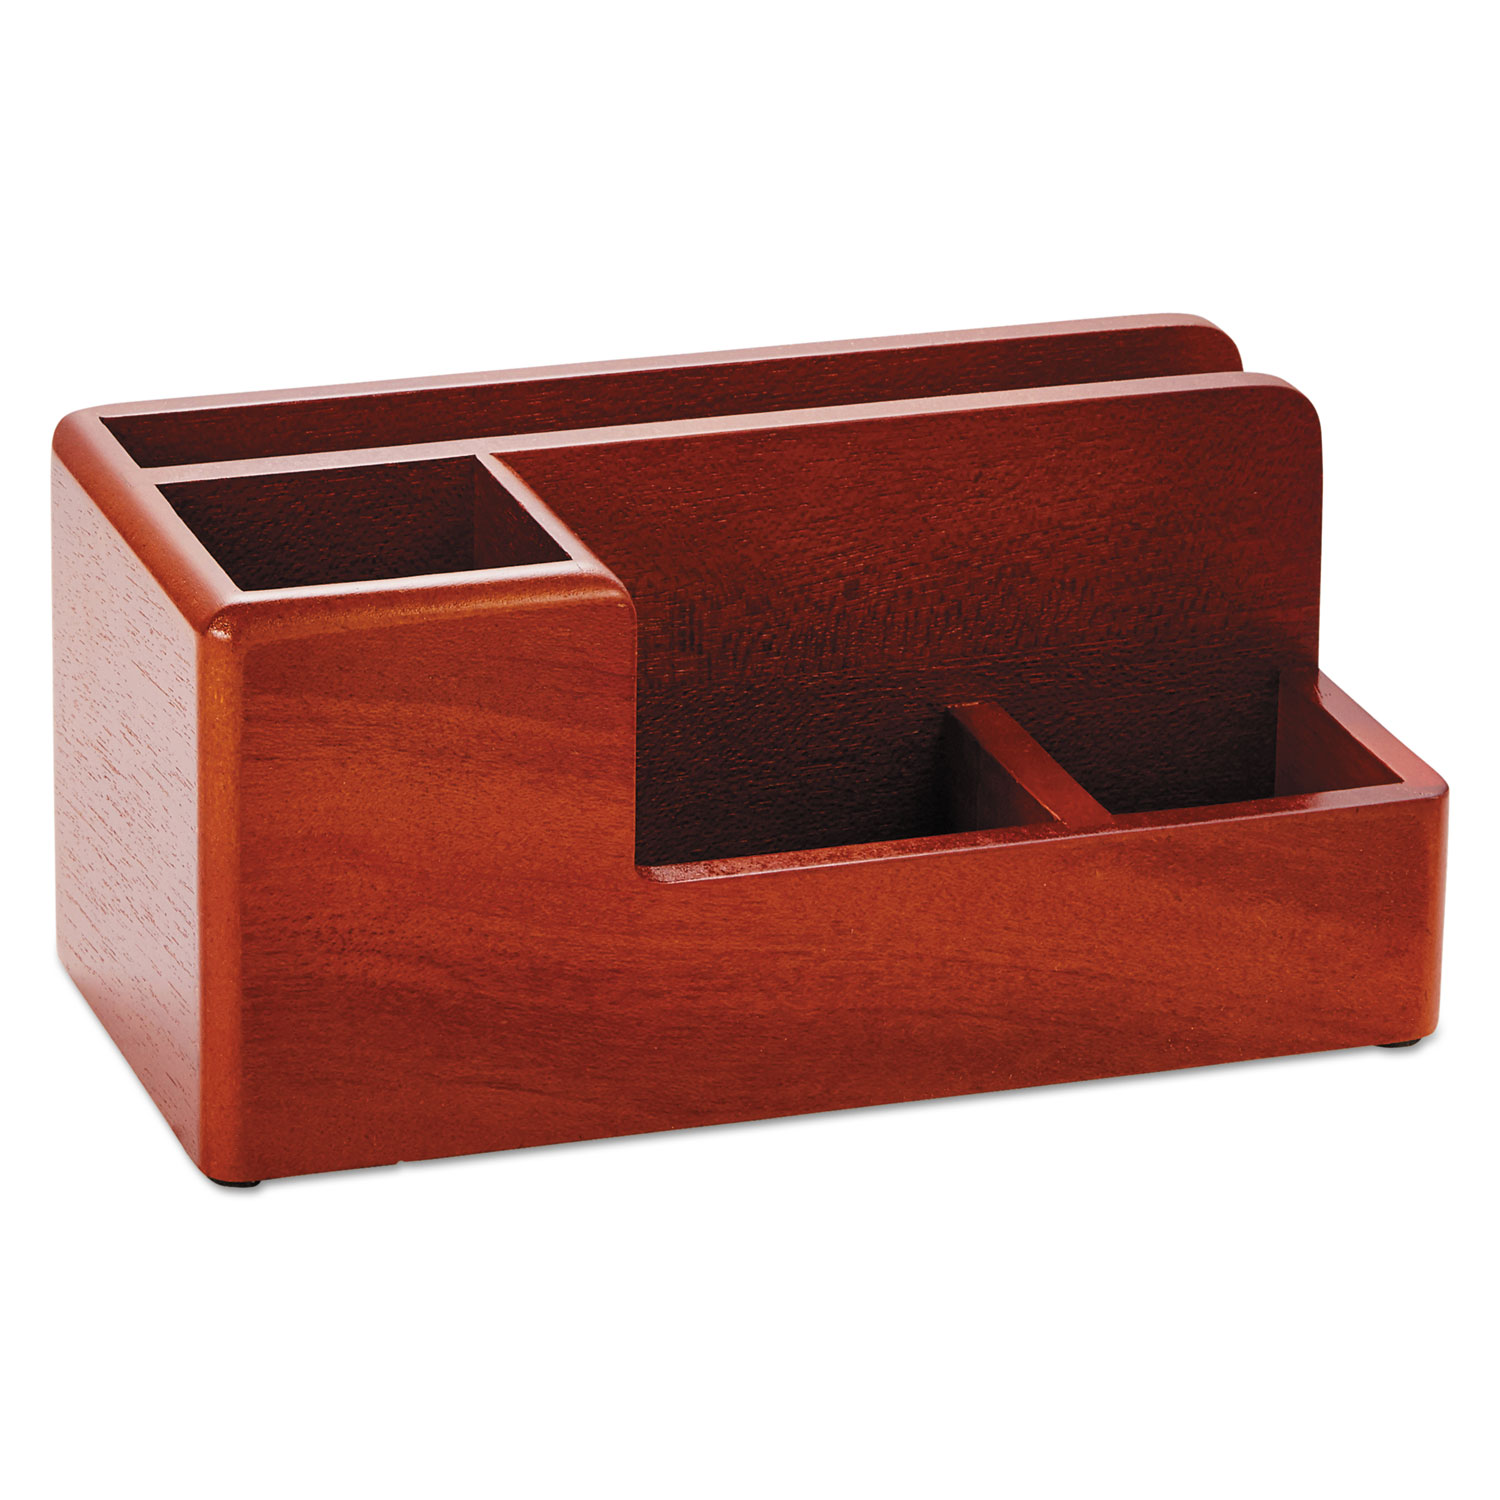  Rolodex 1734648 Wood Tones Desk Organizer, Wood, 4 1/4 x 8 3/4 x 4 1/8, Mahogany (ROL1734648) 